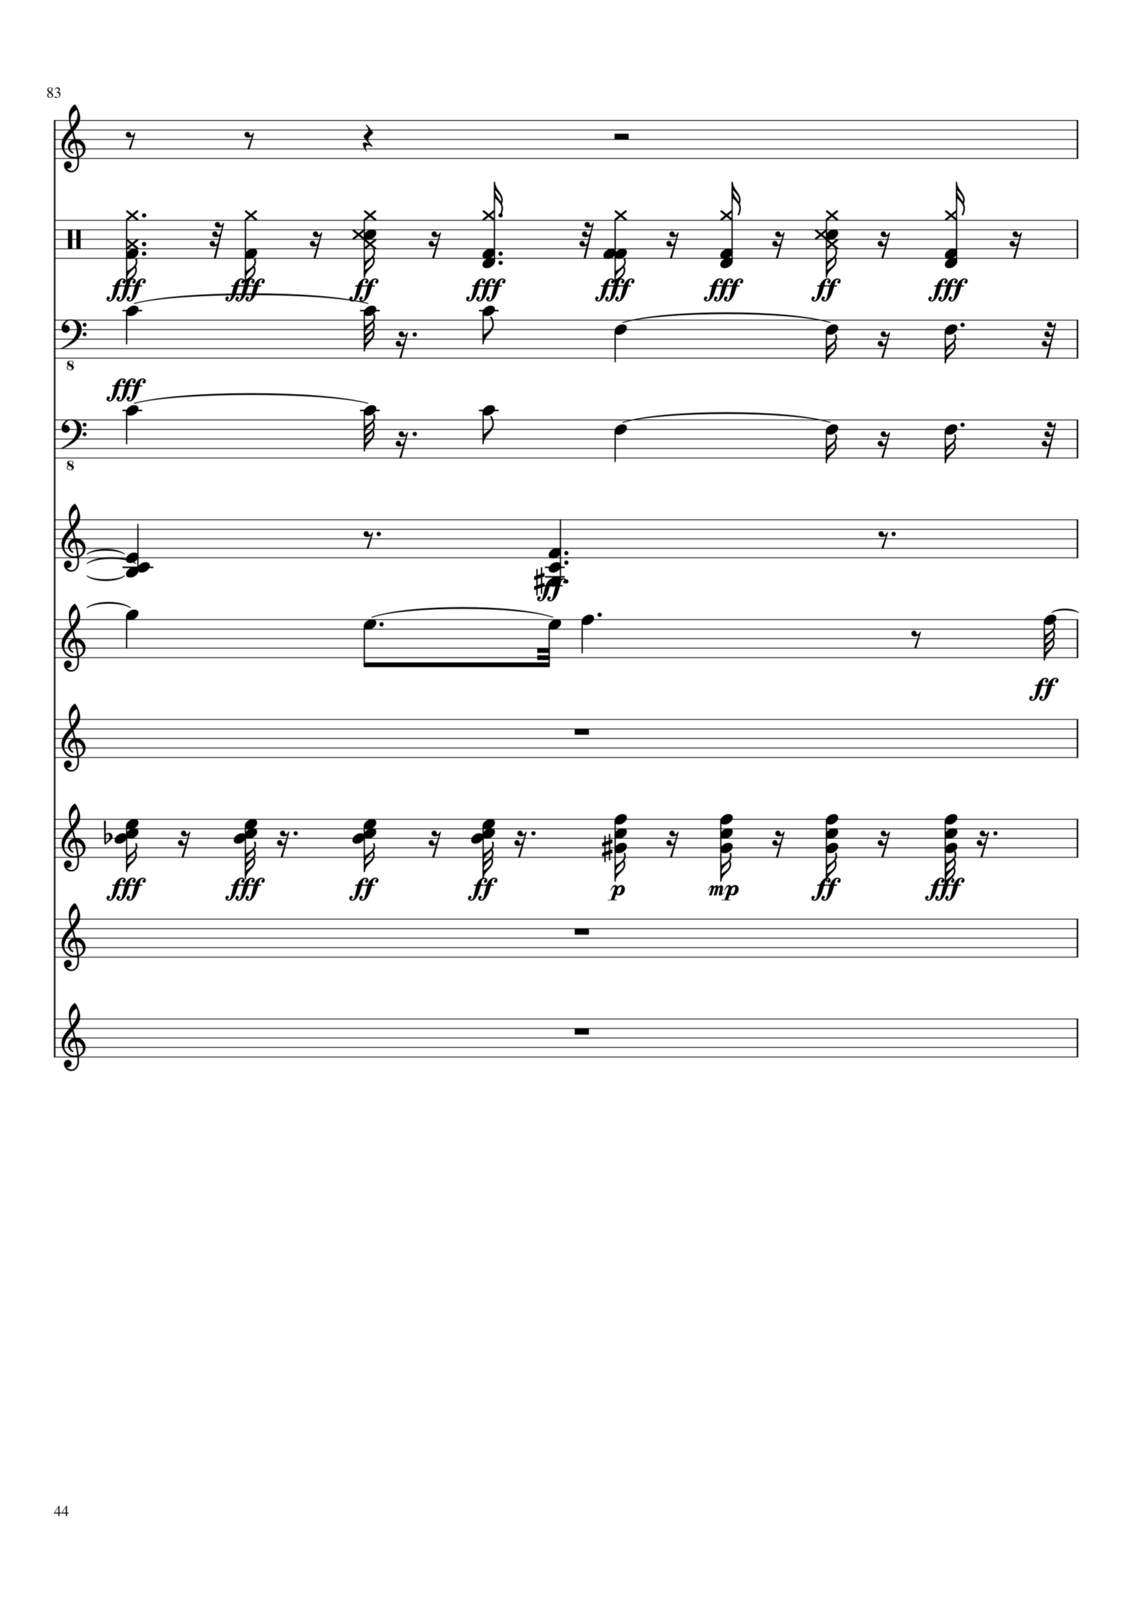 Vechnaya prizrachnaya vstrechnaya slide, Image 32